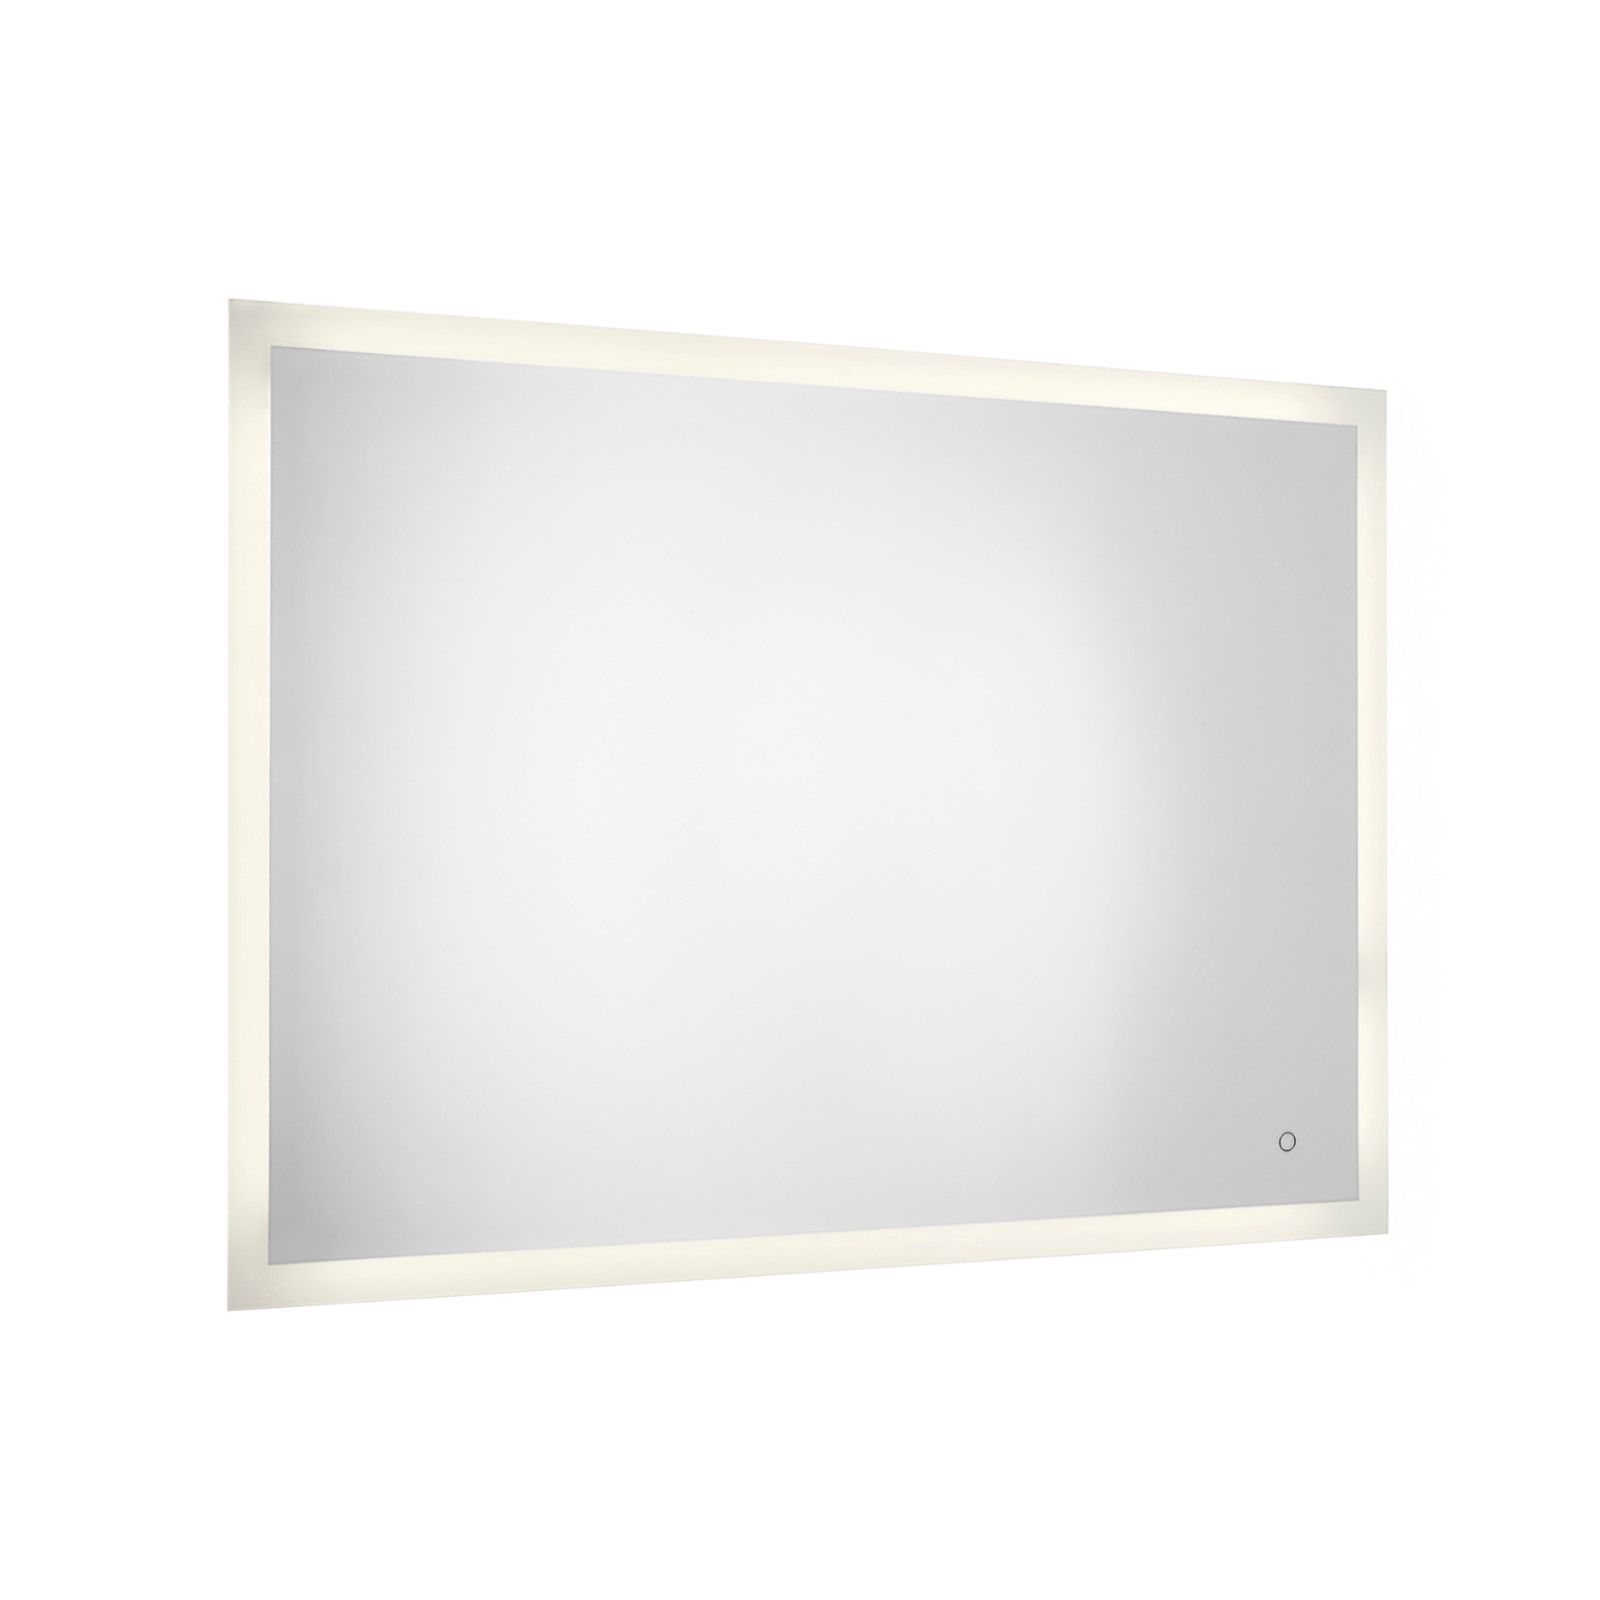 Specchio led 100x70 cm luce naturale bordo sabbiato e accensione touch -  Pierre di Gedy